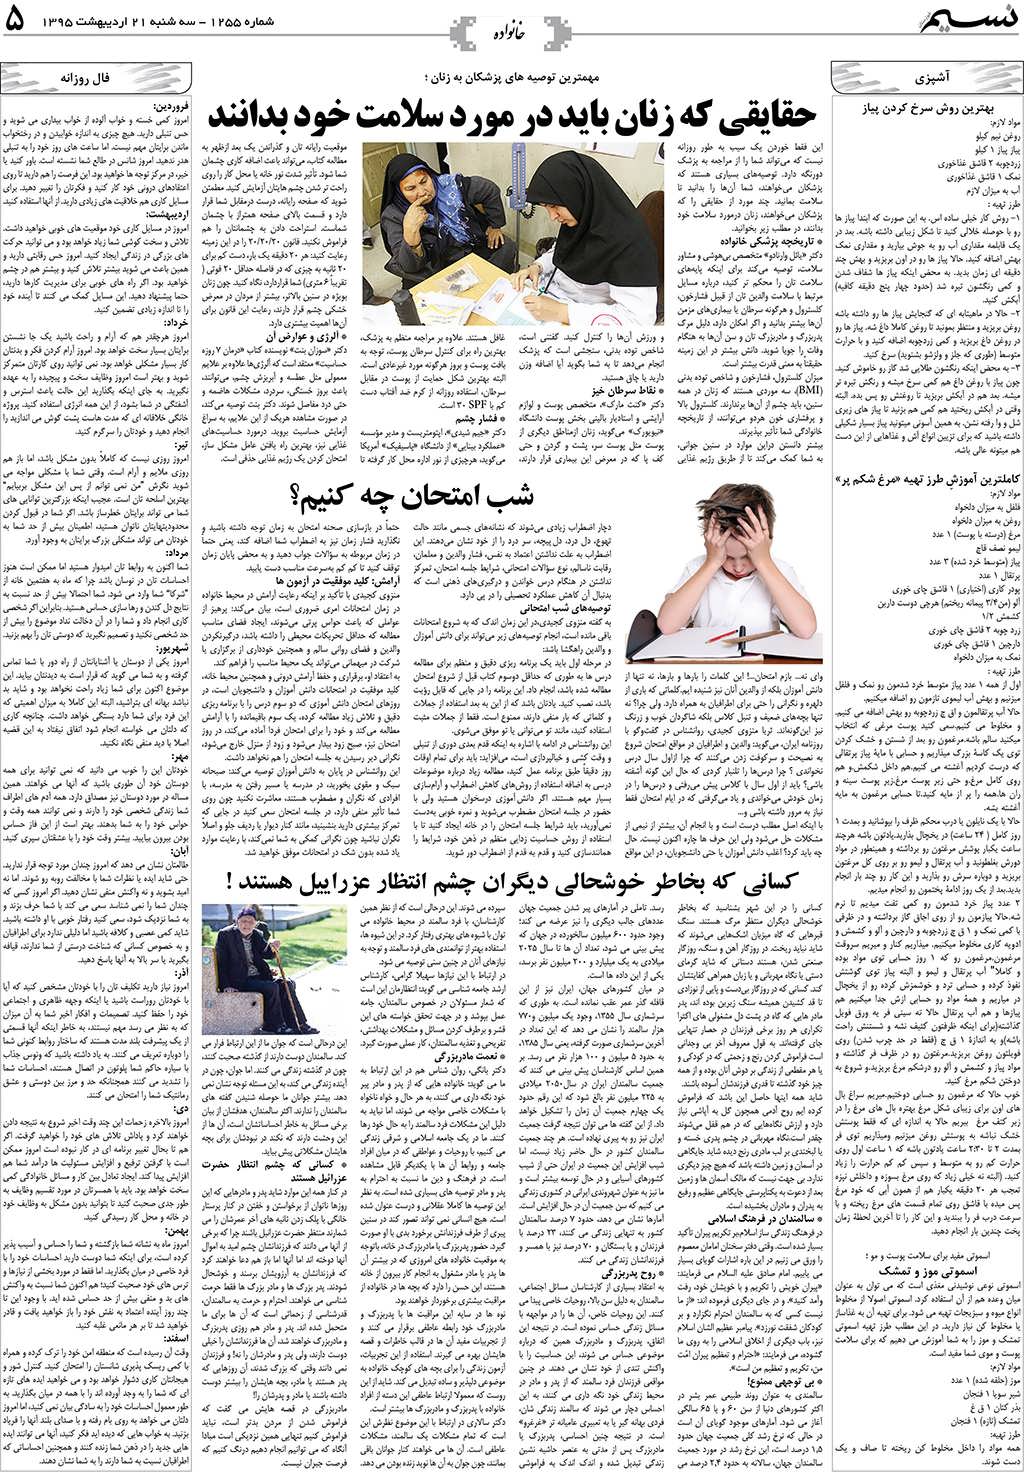 صفحه خانواده روزنامه نسیم شماره 1255